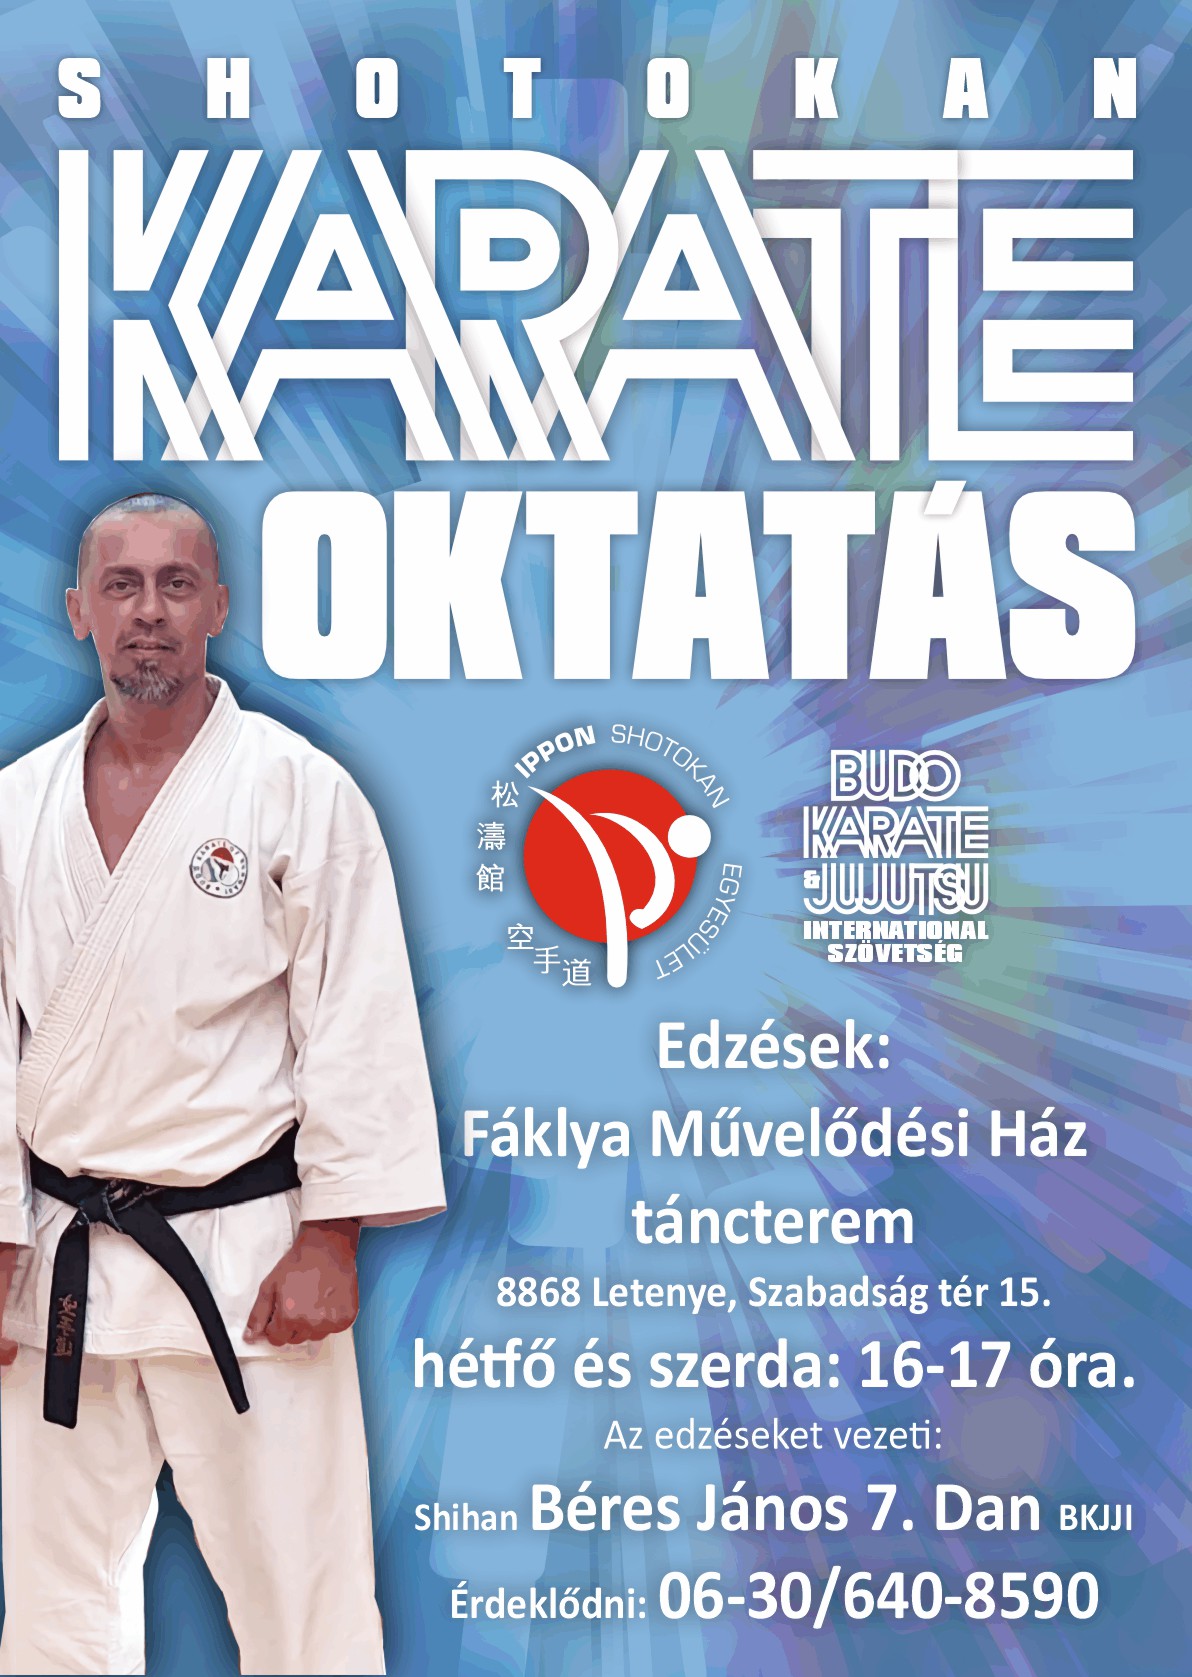 Karate oktatás indul Letenyén